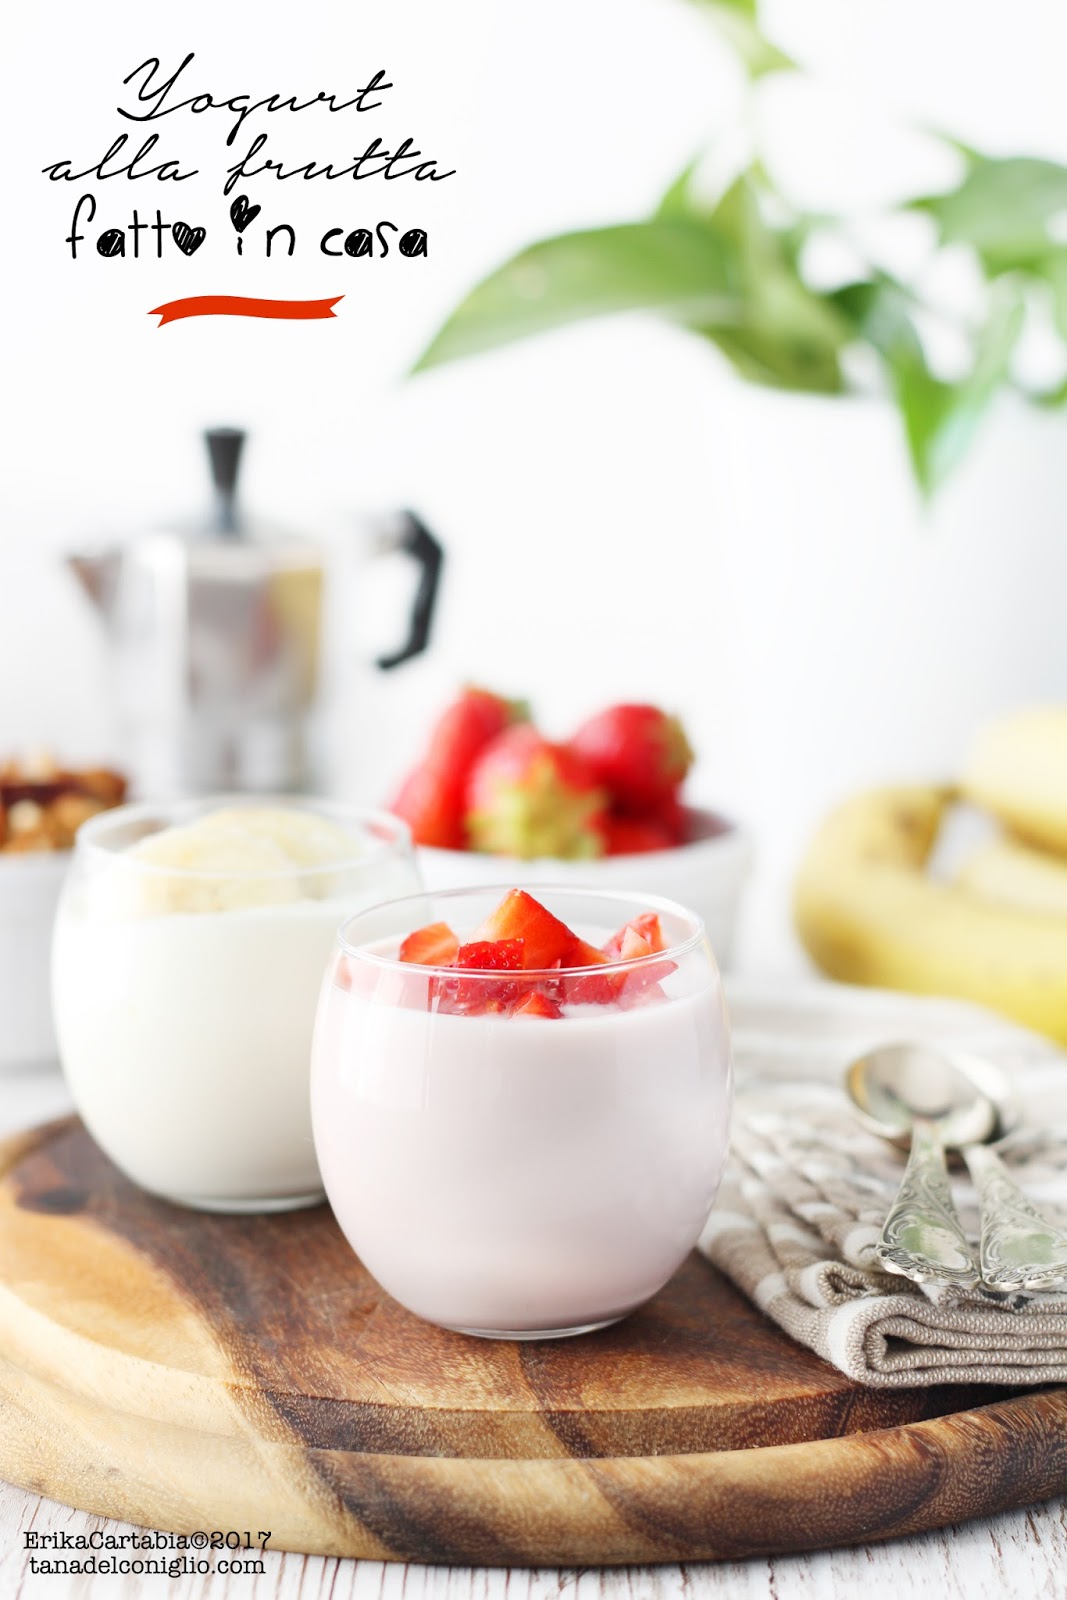 Yogurt alla frutta fatto in casa